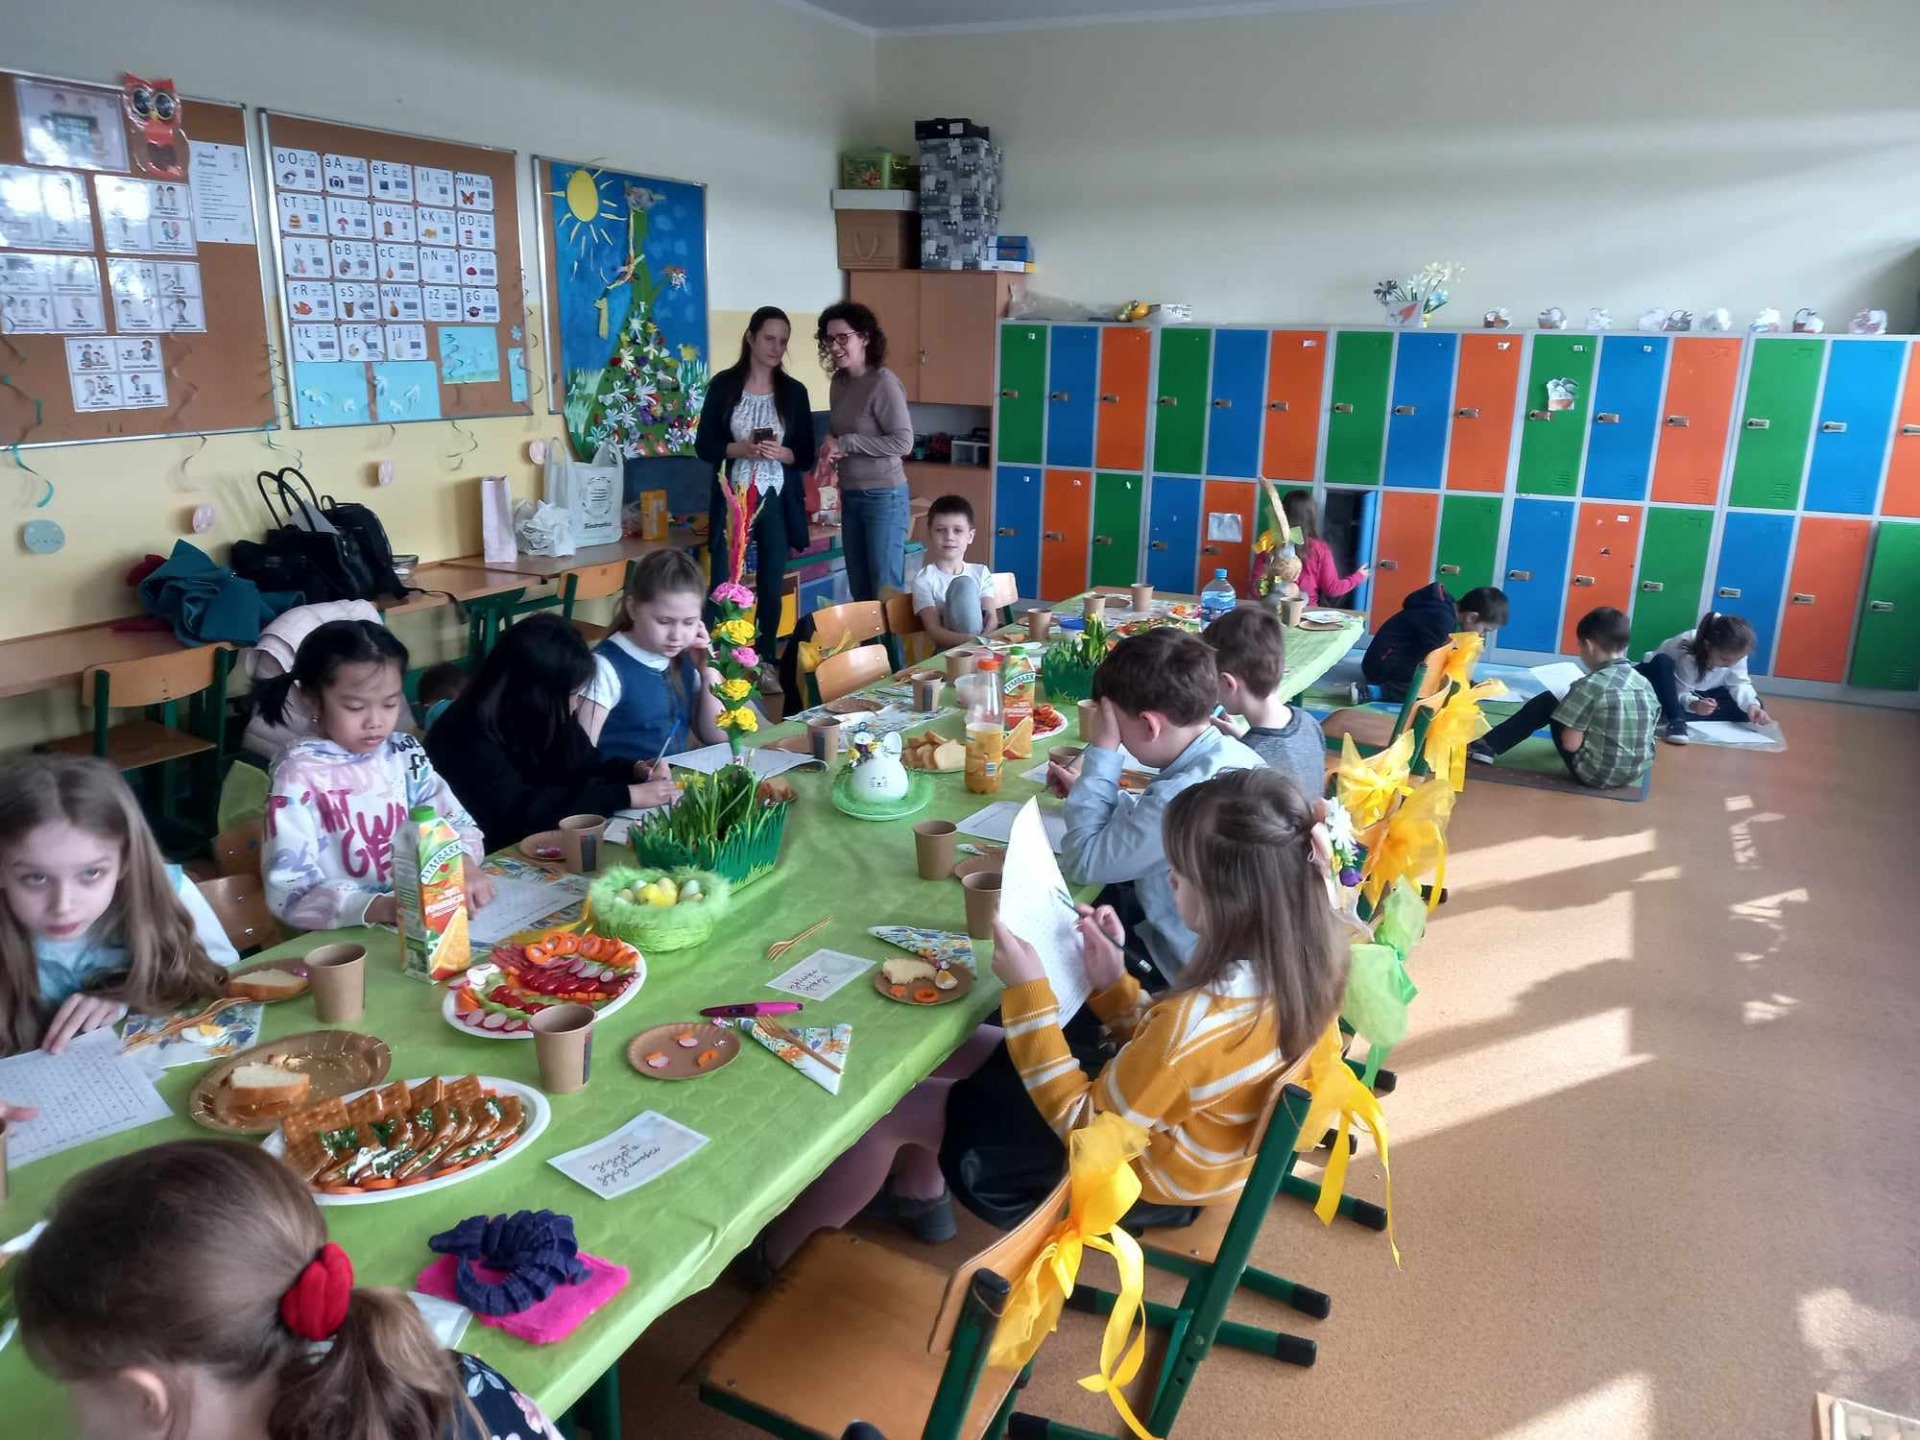 Uczniowie w klasie siedzą przy złączonych ławach nakrytych zielonym obrusem. Na tak urządzonym wielkanocnym stole stoi poczęstunek na talerzach, dzieci siedzą i zajadają się smakołykami. W głębi klasy widać szafki uczniów w kolorze niebieskim, pomarańczowym i zielonym obok których stoją dwie wychowawczynie.